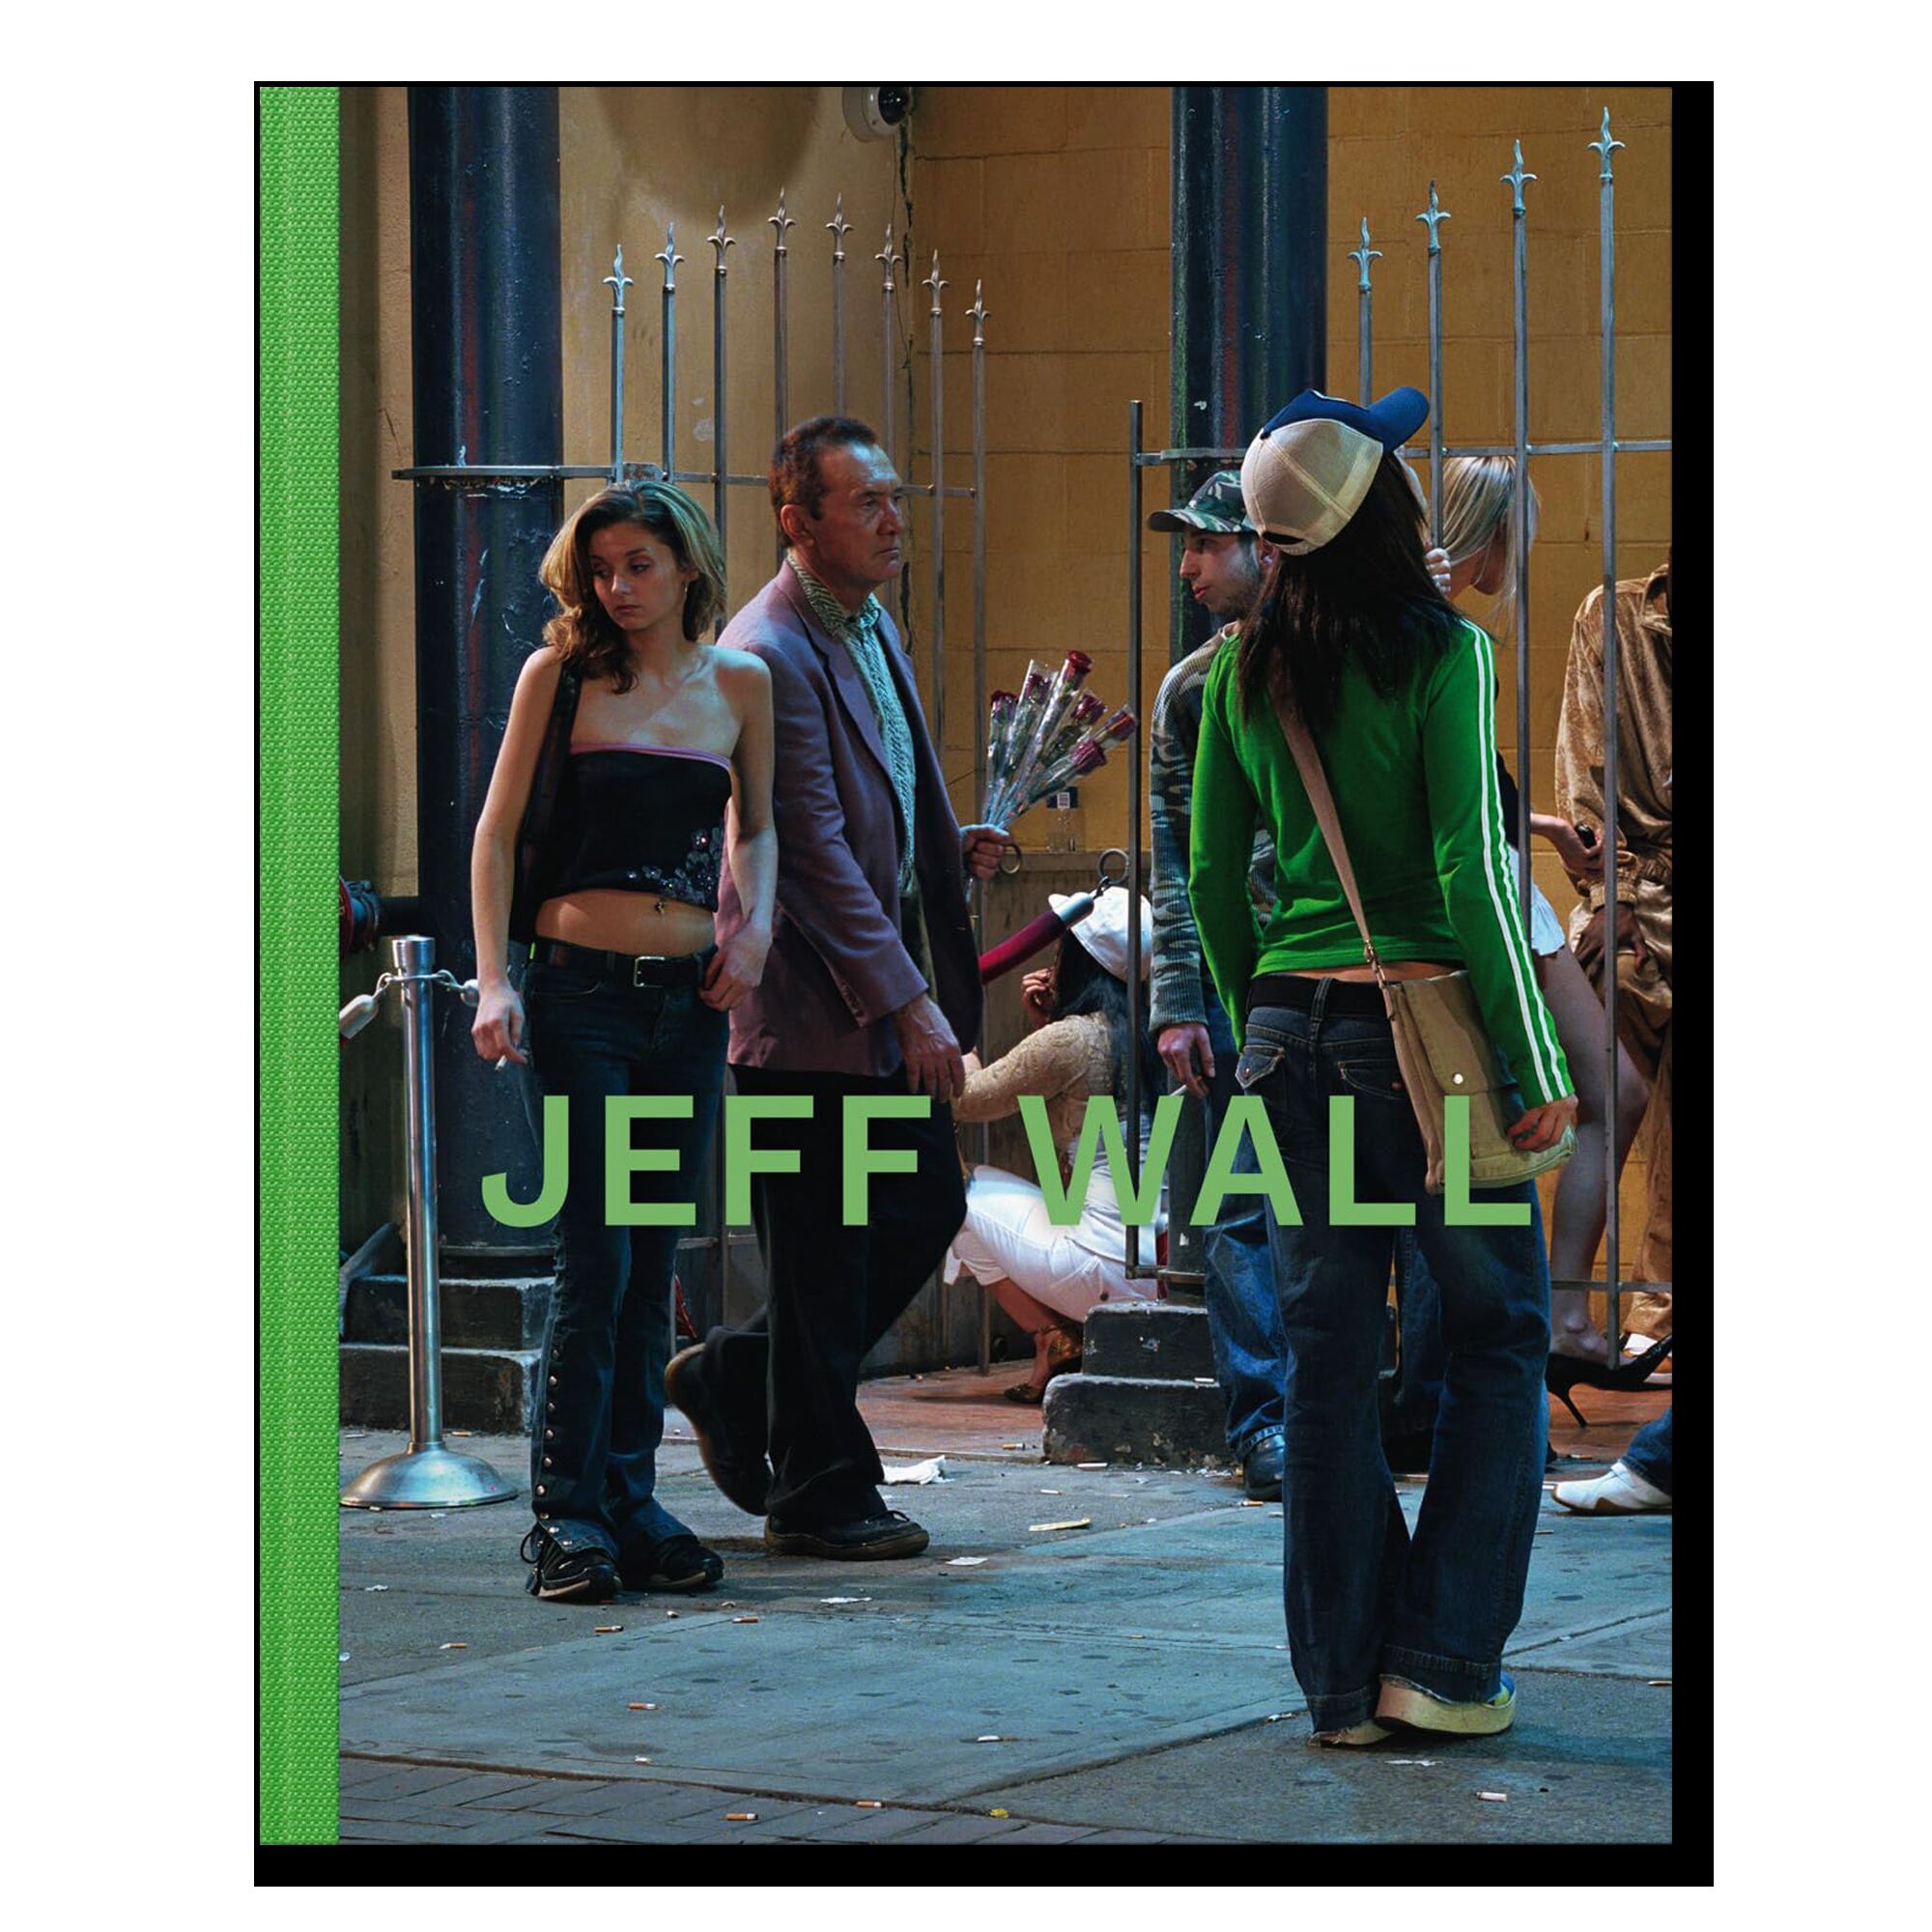 Jeff Wall 